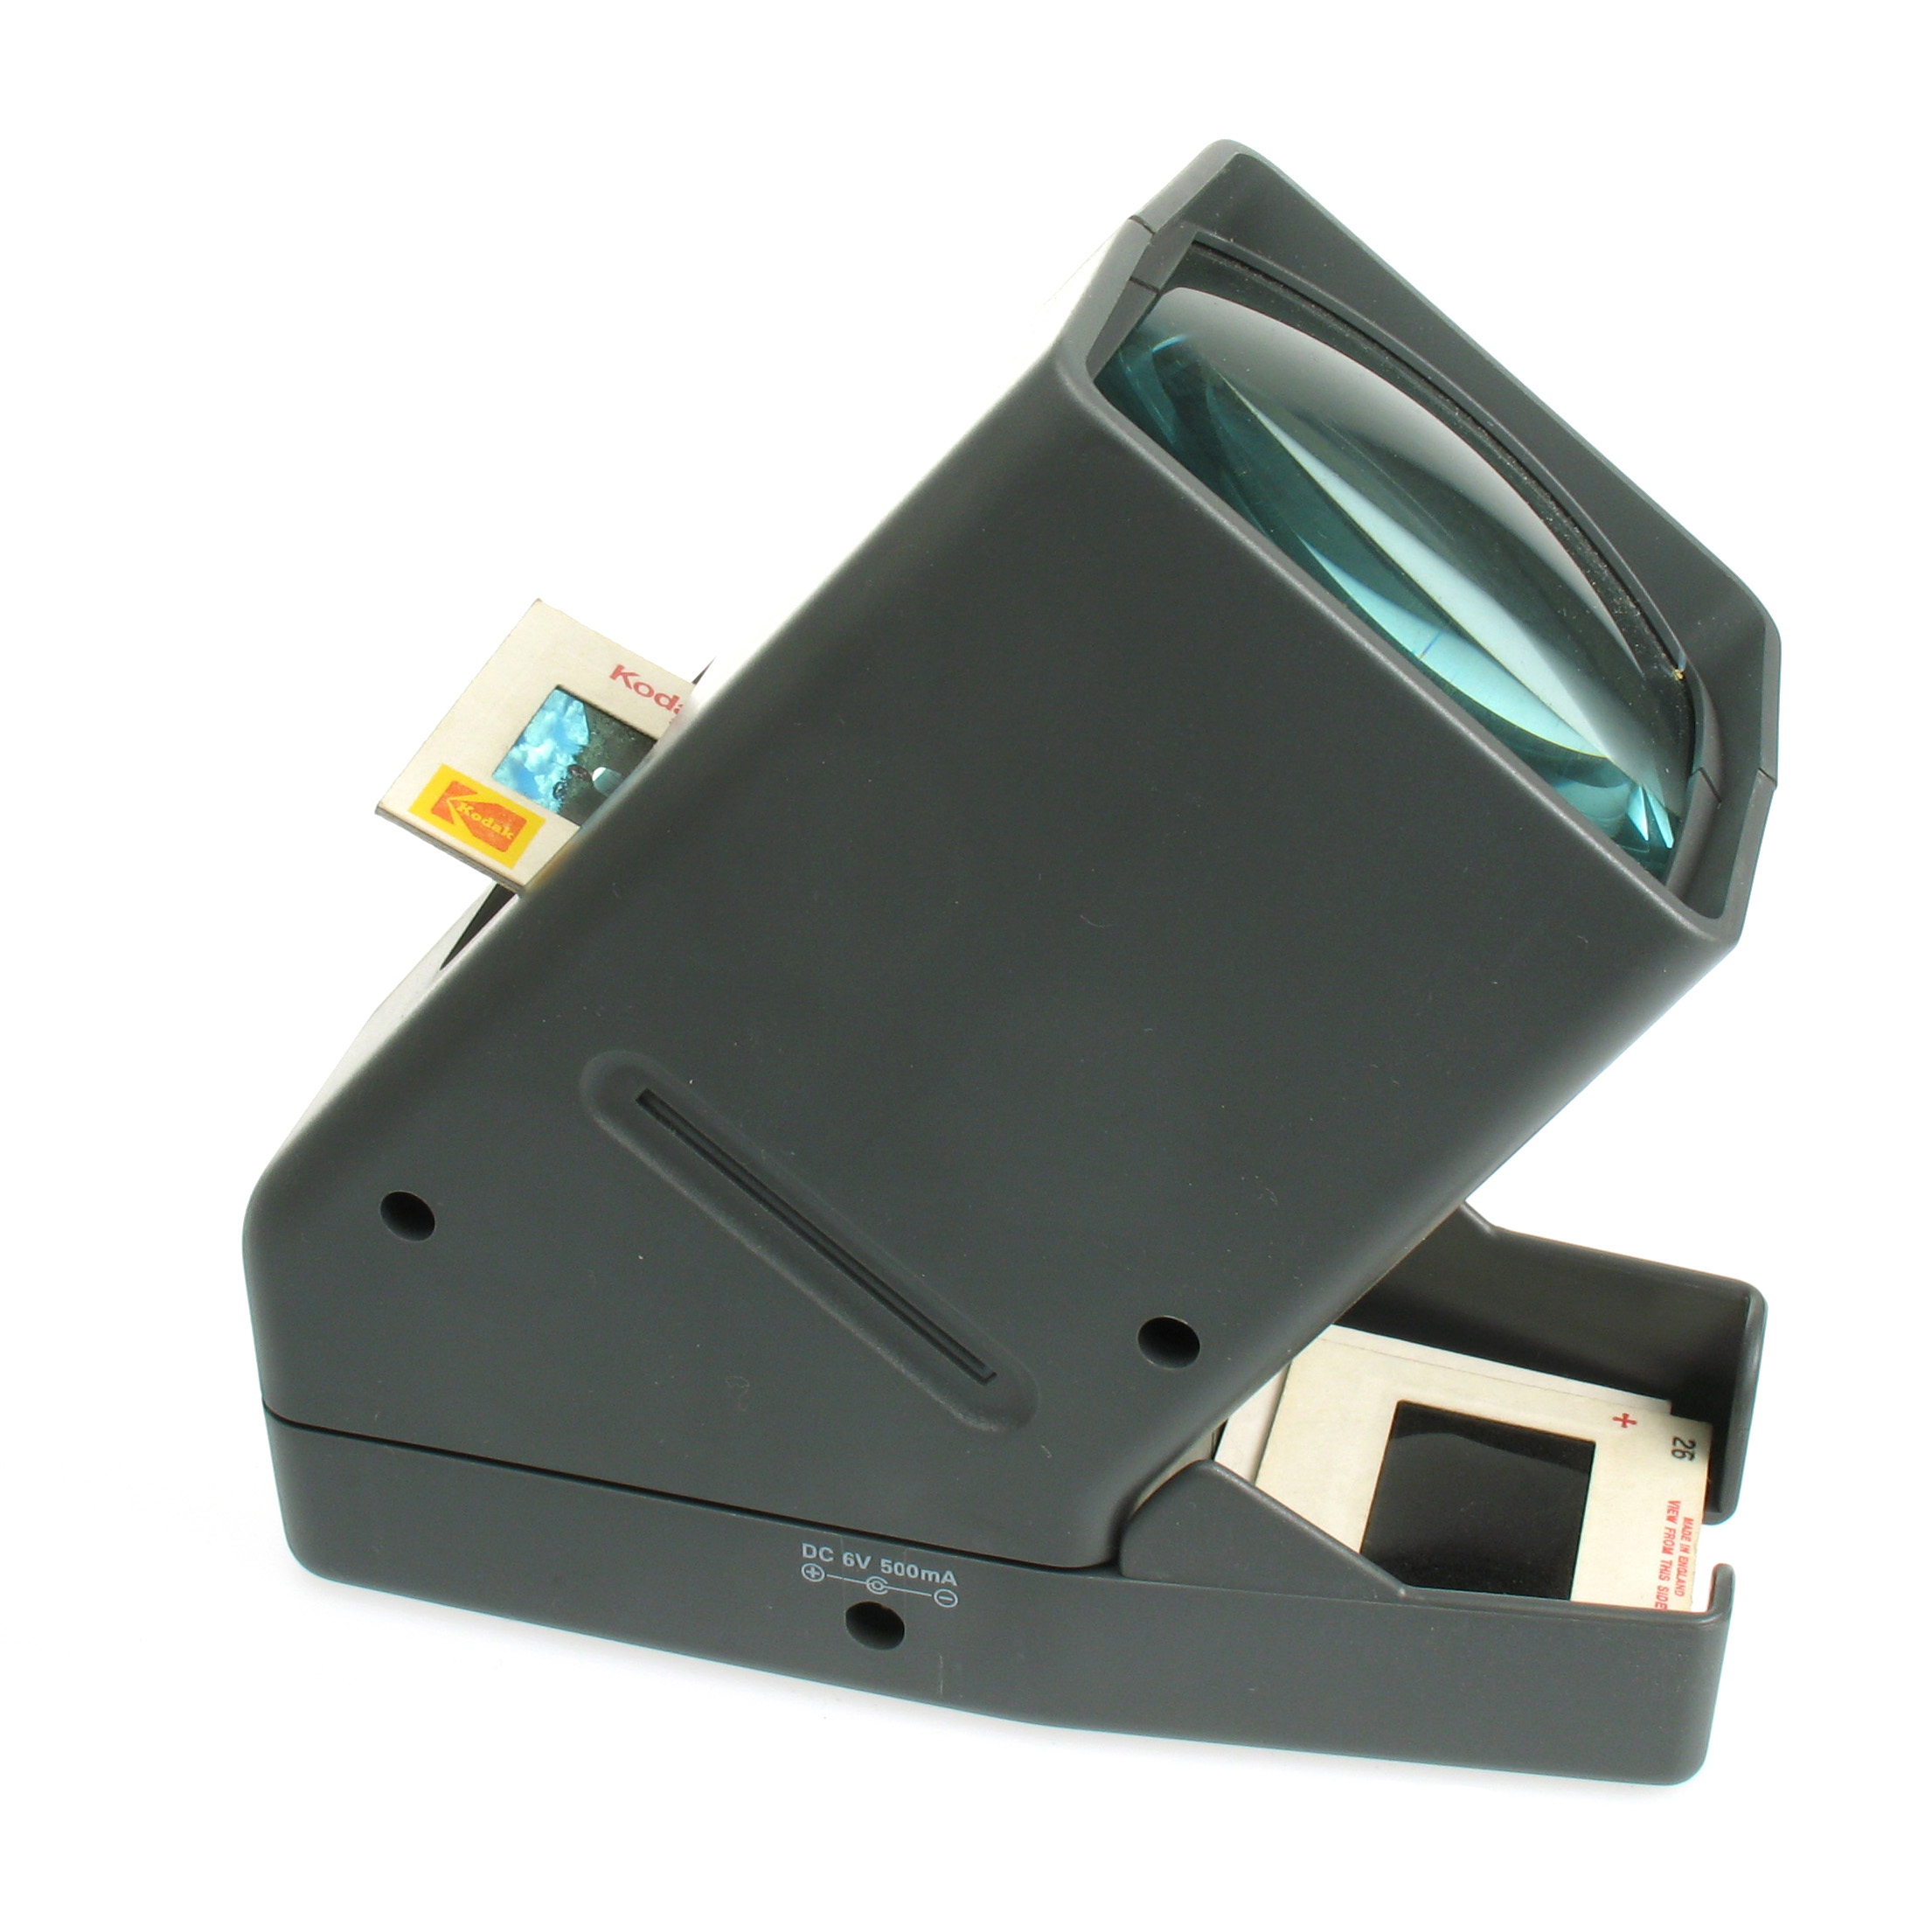 PHOTOLUX SV-3 LED Daylight Desktop Slide Viewer 3x Magnification for 35mm Slides